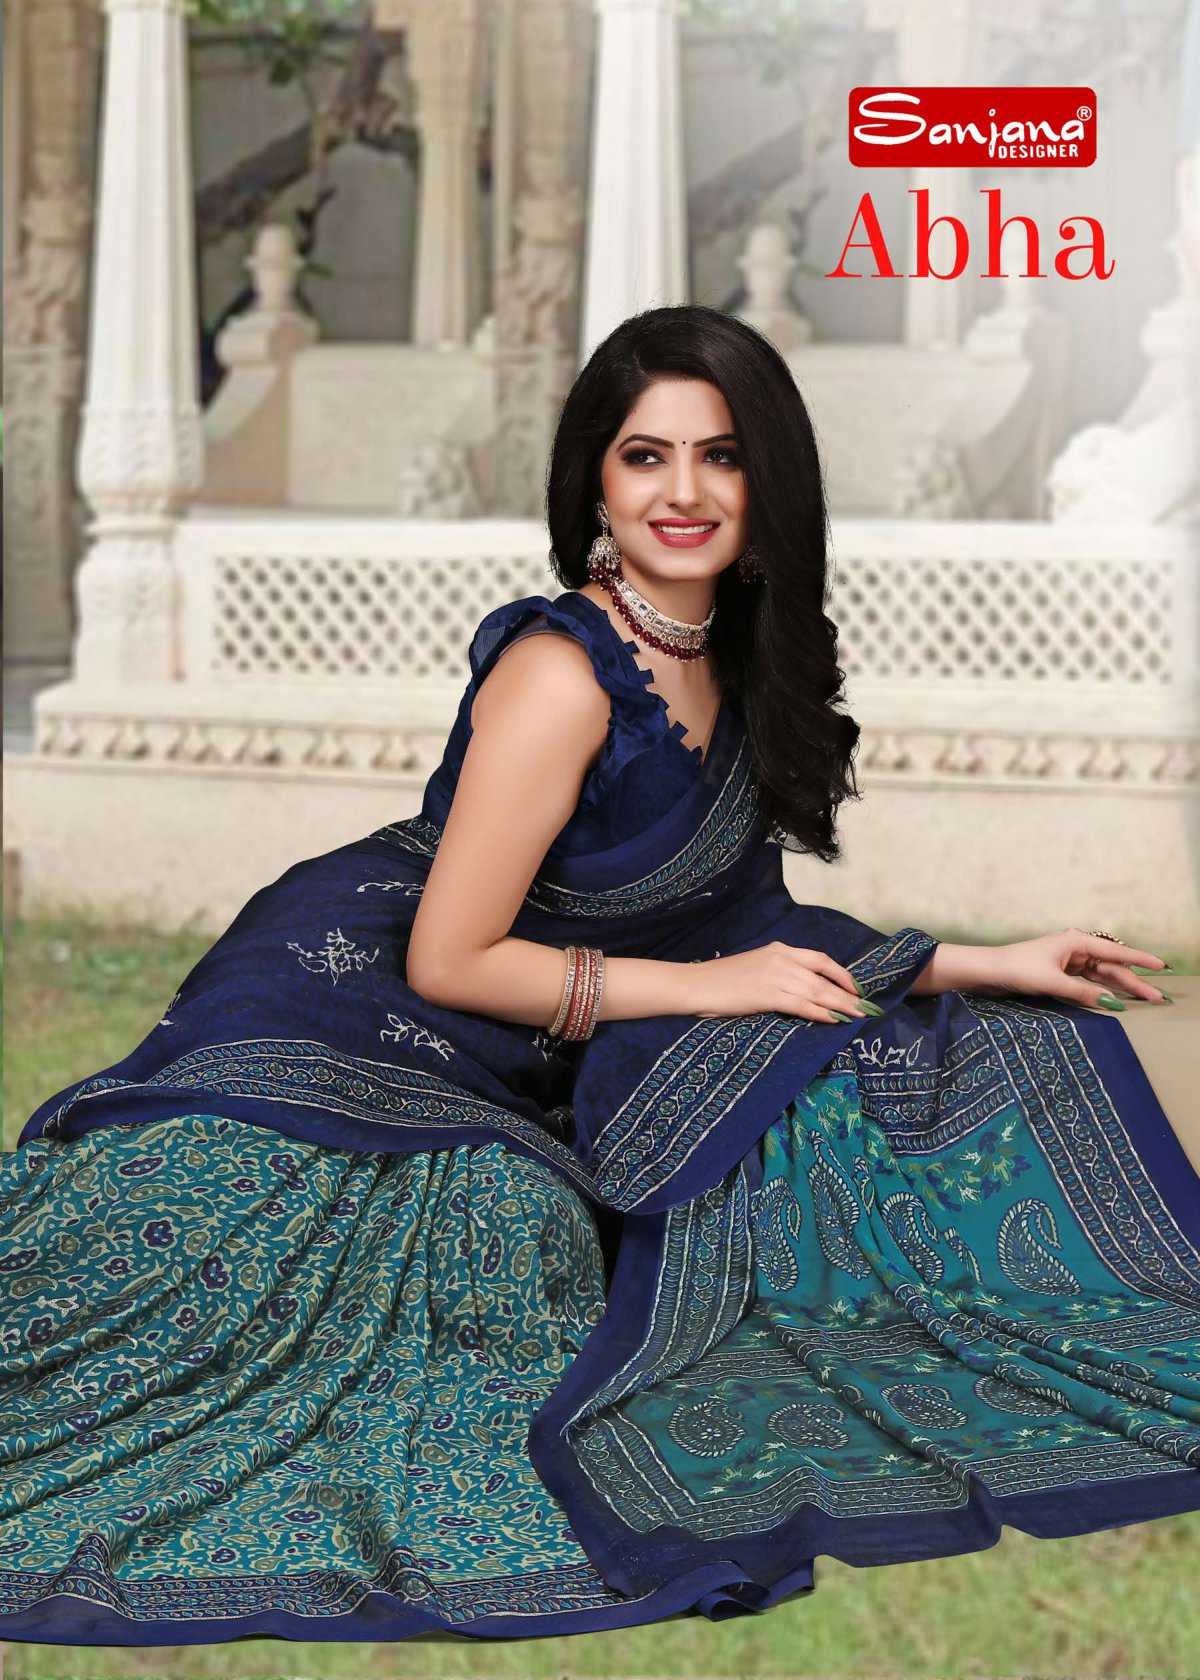 sanjana designer abha fancy moss jari print amazing sarees collection